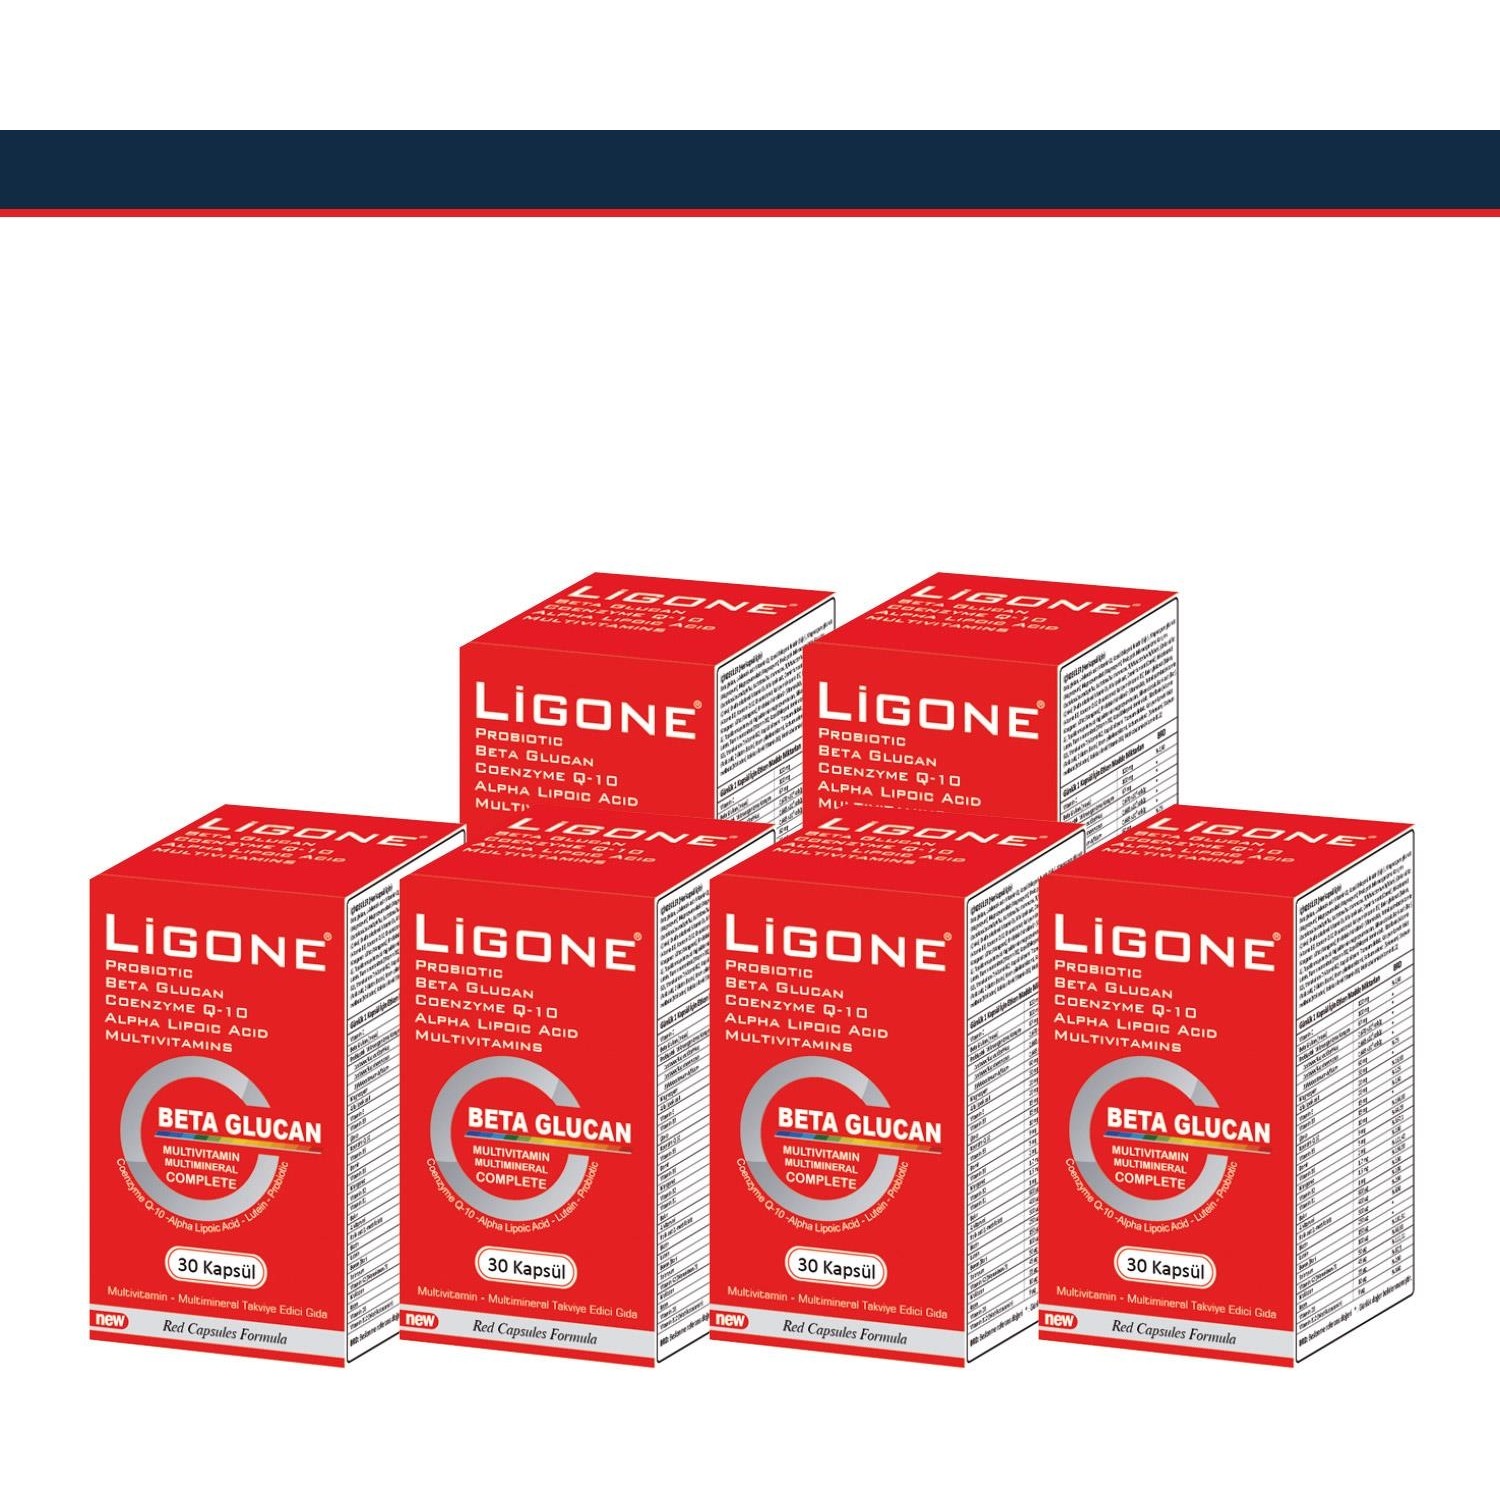 Пищевая добавка Newdrog Ligone Beta Glucan, 6 упаковок по 30 капсул